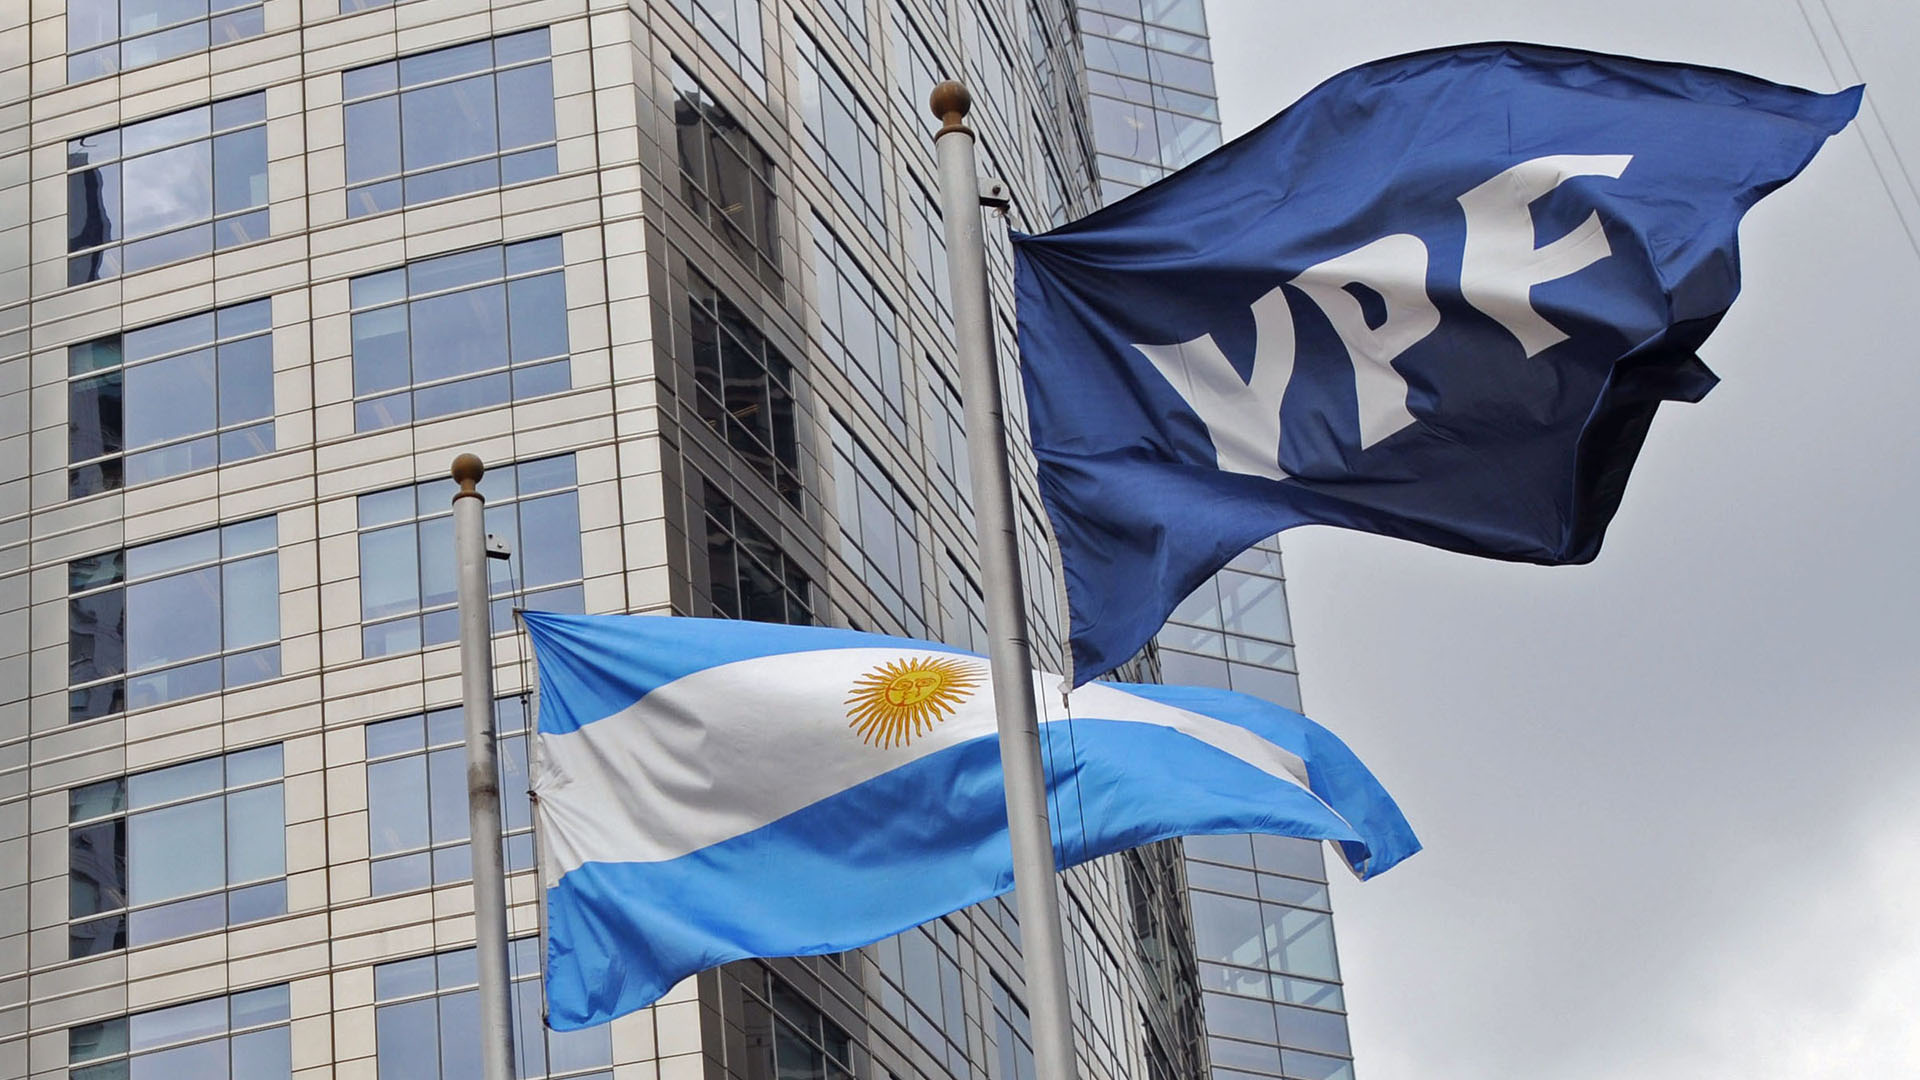 La jueza falló a favor de los fondos de inversión Burford Capital y Eton Park, y en contra de la Argentina, en una demanda por la expropiación de la petrolera YPF.